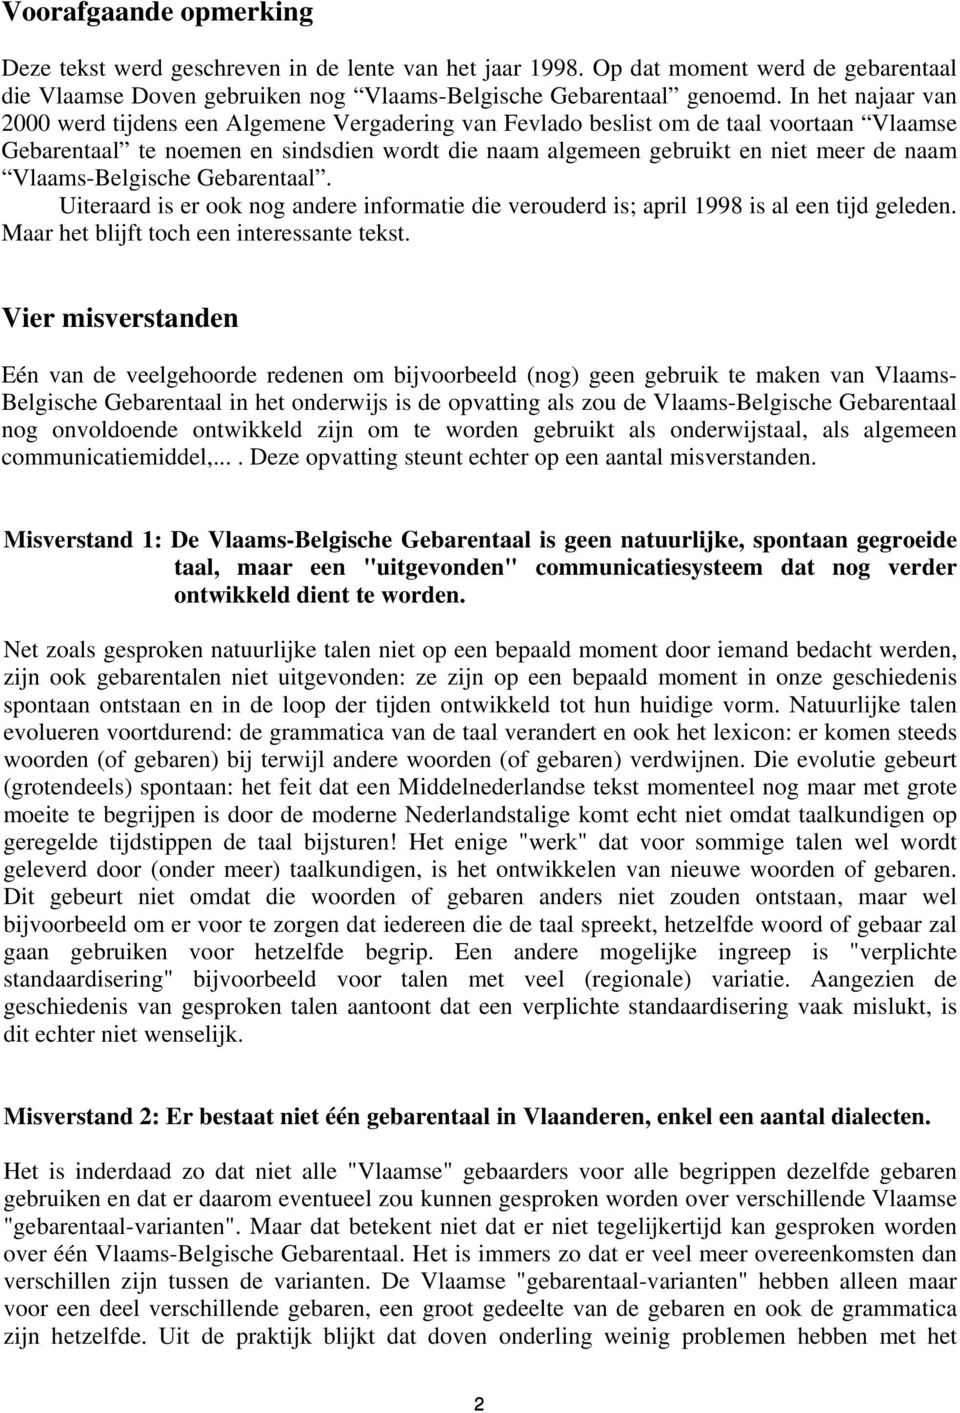 Vlaams-Belgische Gebarentaal. Uiteraard is er ook nog andere informatie die verouderd is; april 1998 is al een tijd geleden. Maar het blijft toch een interessante tekst.